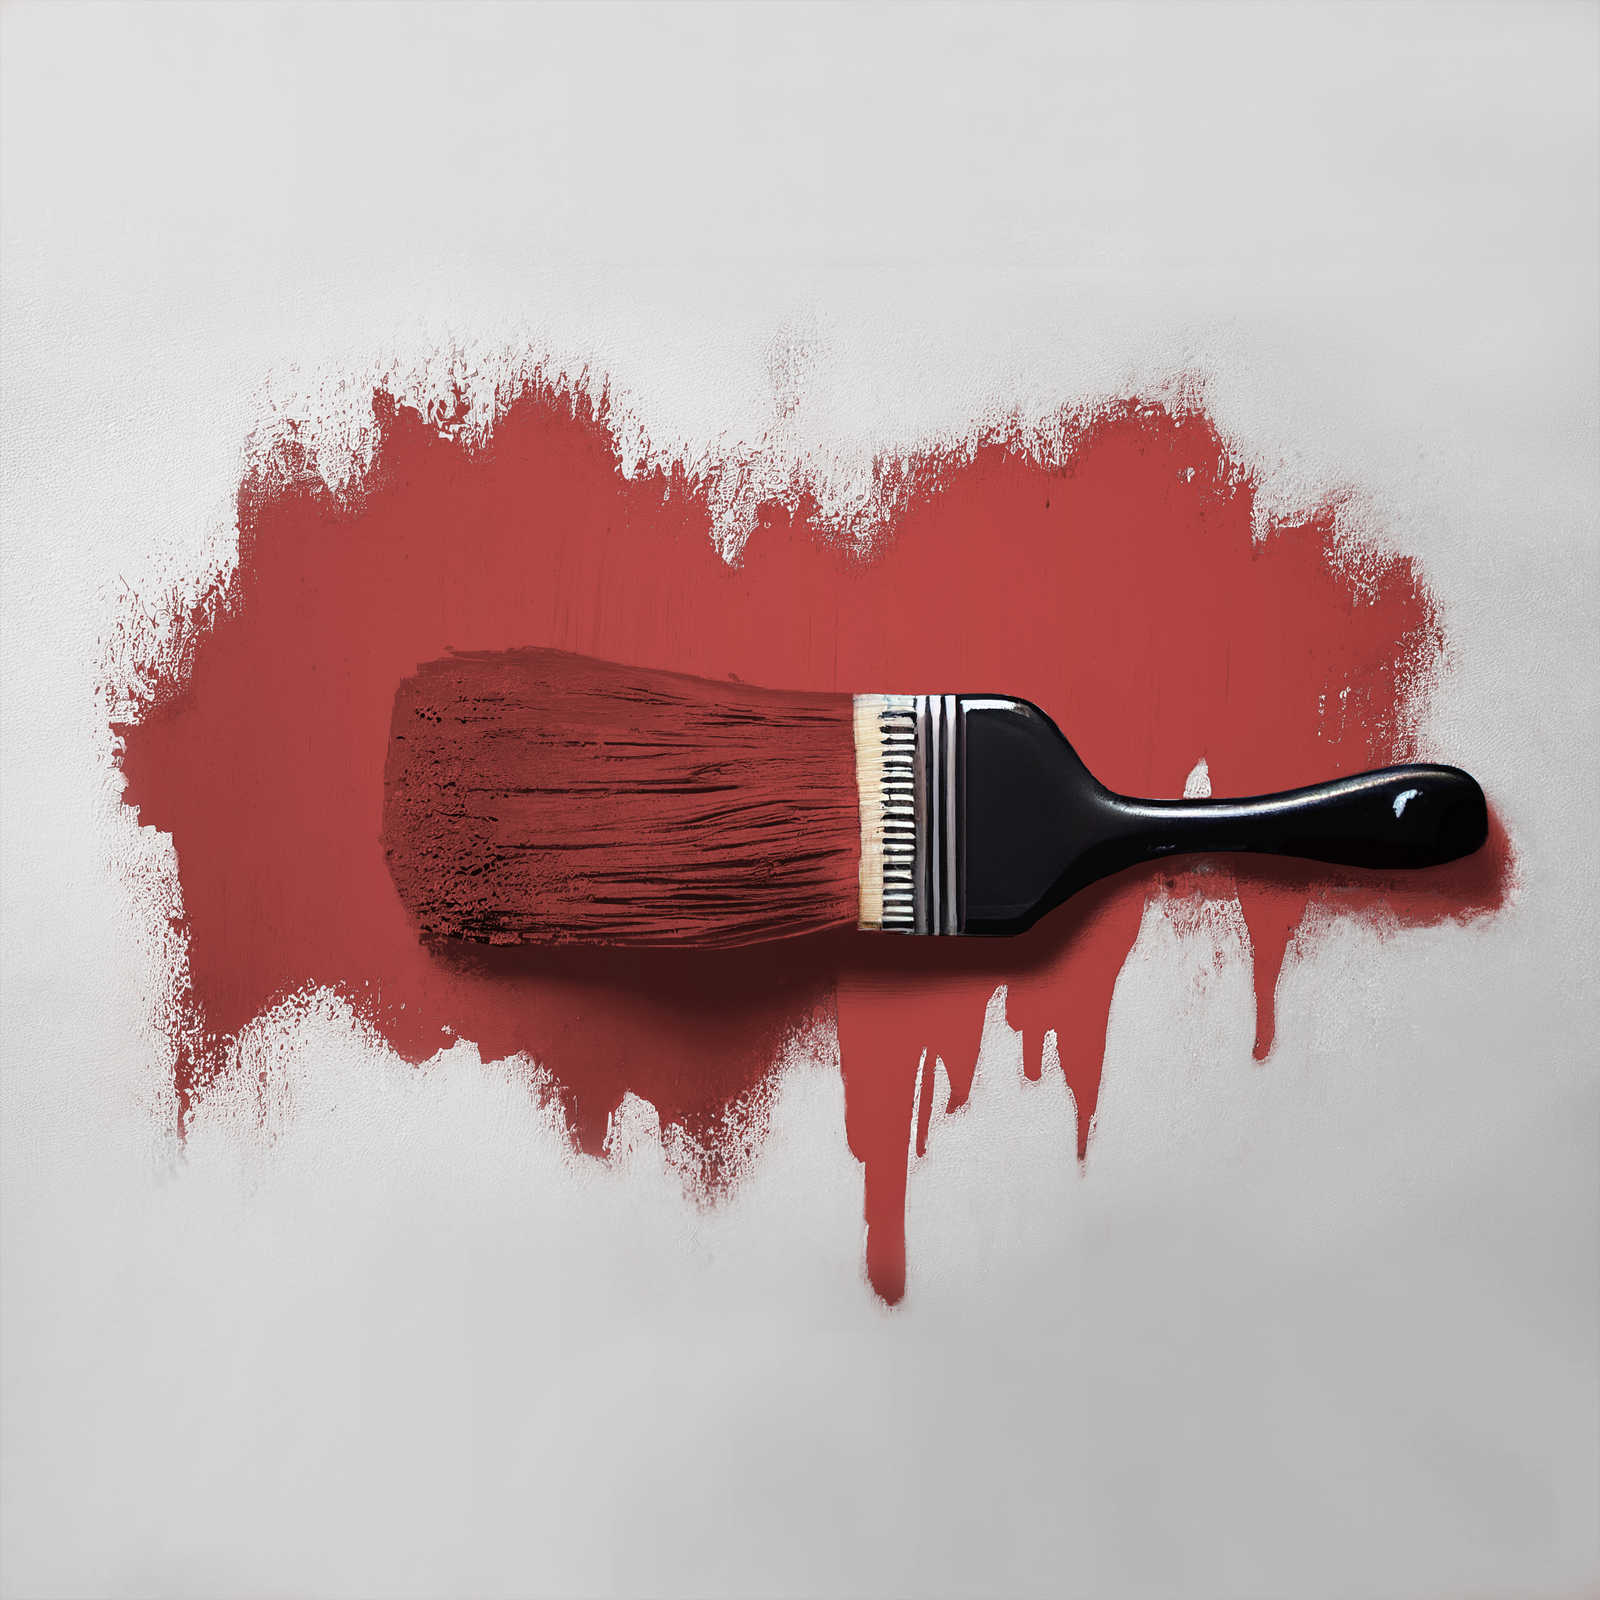             Pintura mural TCK7005 »Cheeky Chilli« en rojo fuego fuerte – 2,5 litro
        